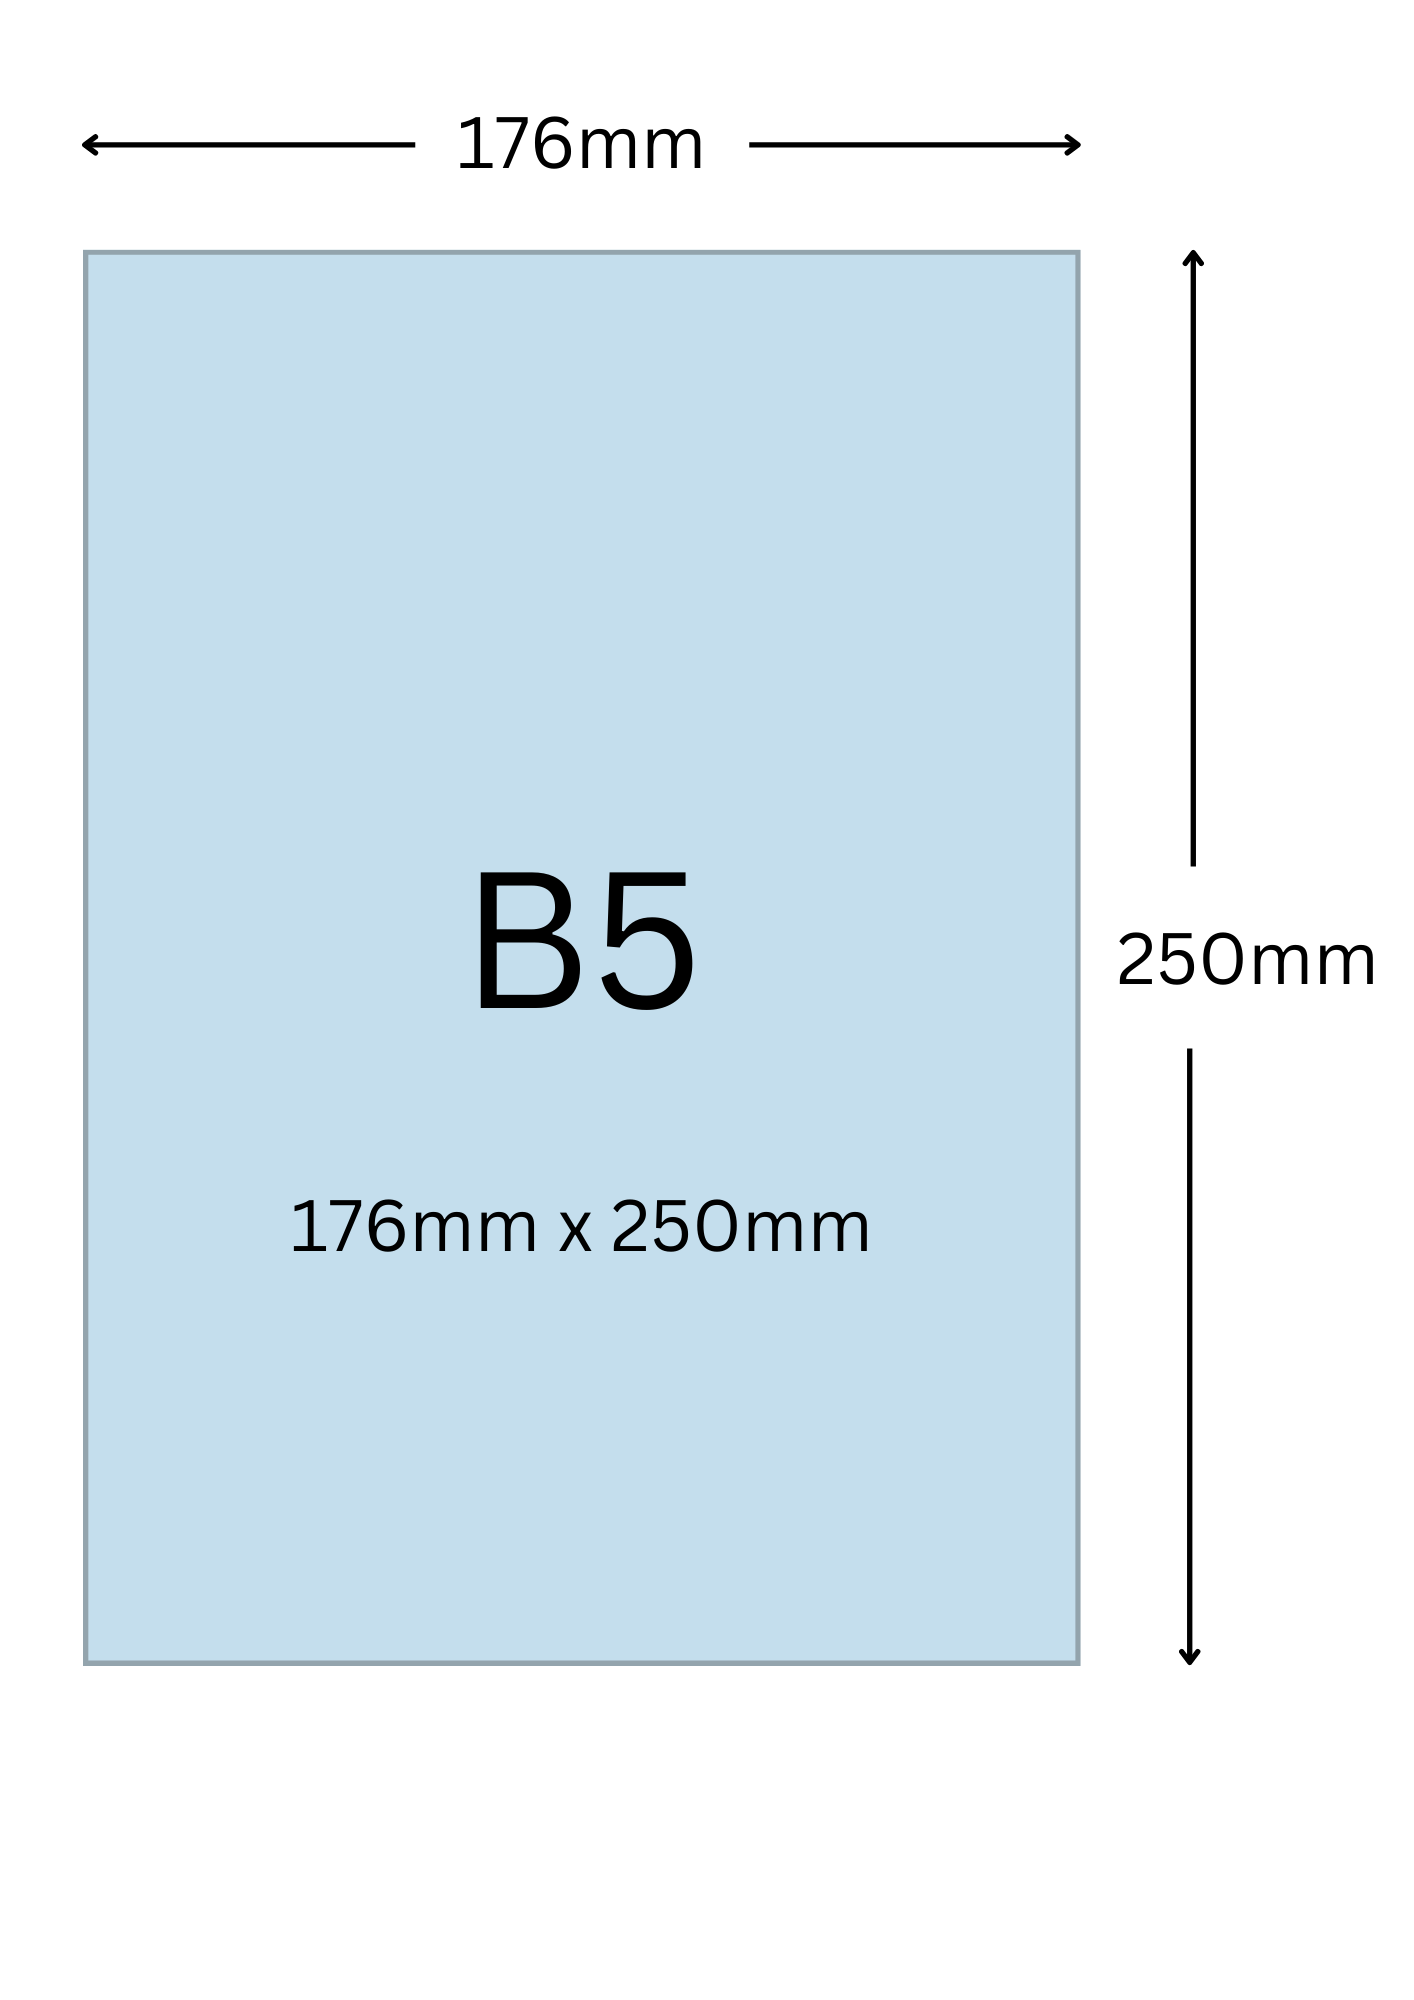 B5尺寸公分, B5紙張尺寸大小, B5紙張對應開數是幾開